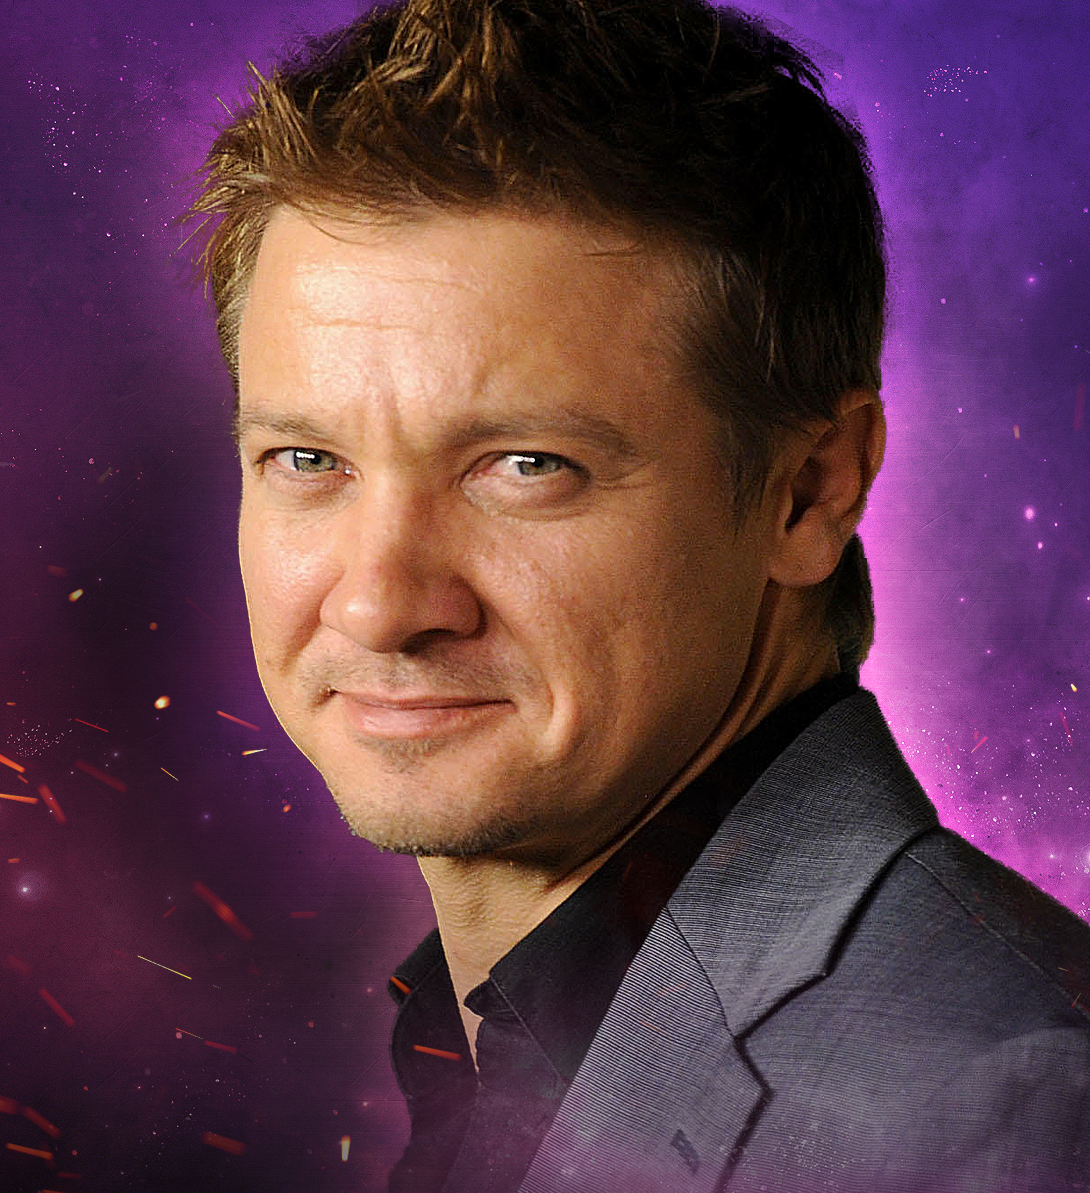 Headshot of Celebrity Fan Fest guest Jeremy Renner on purple background